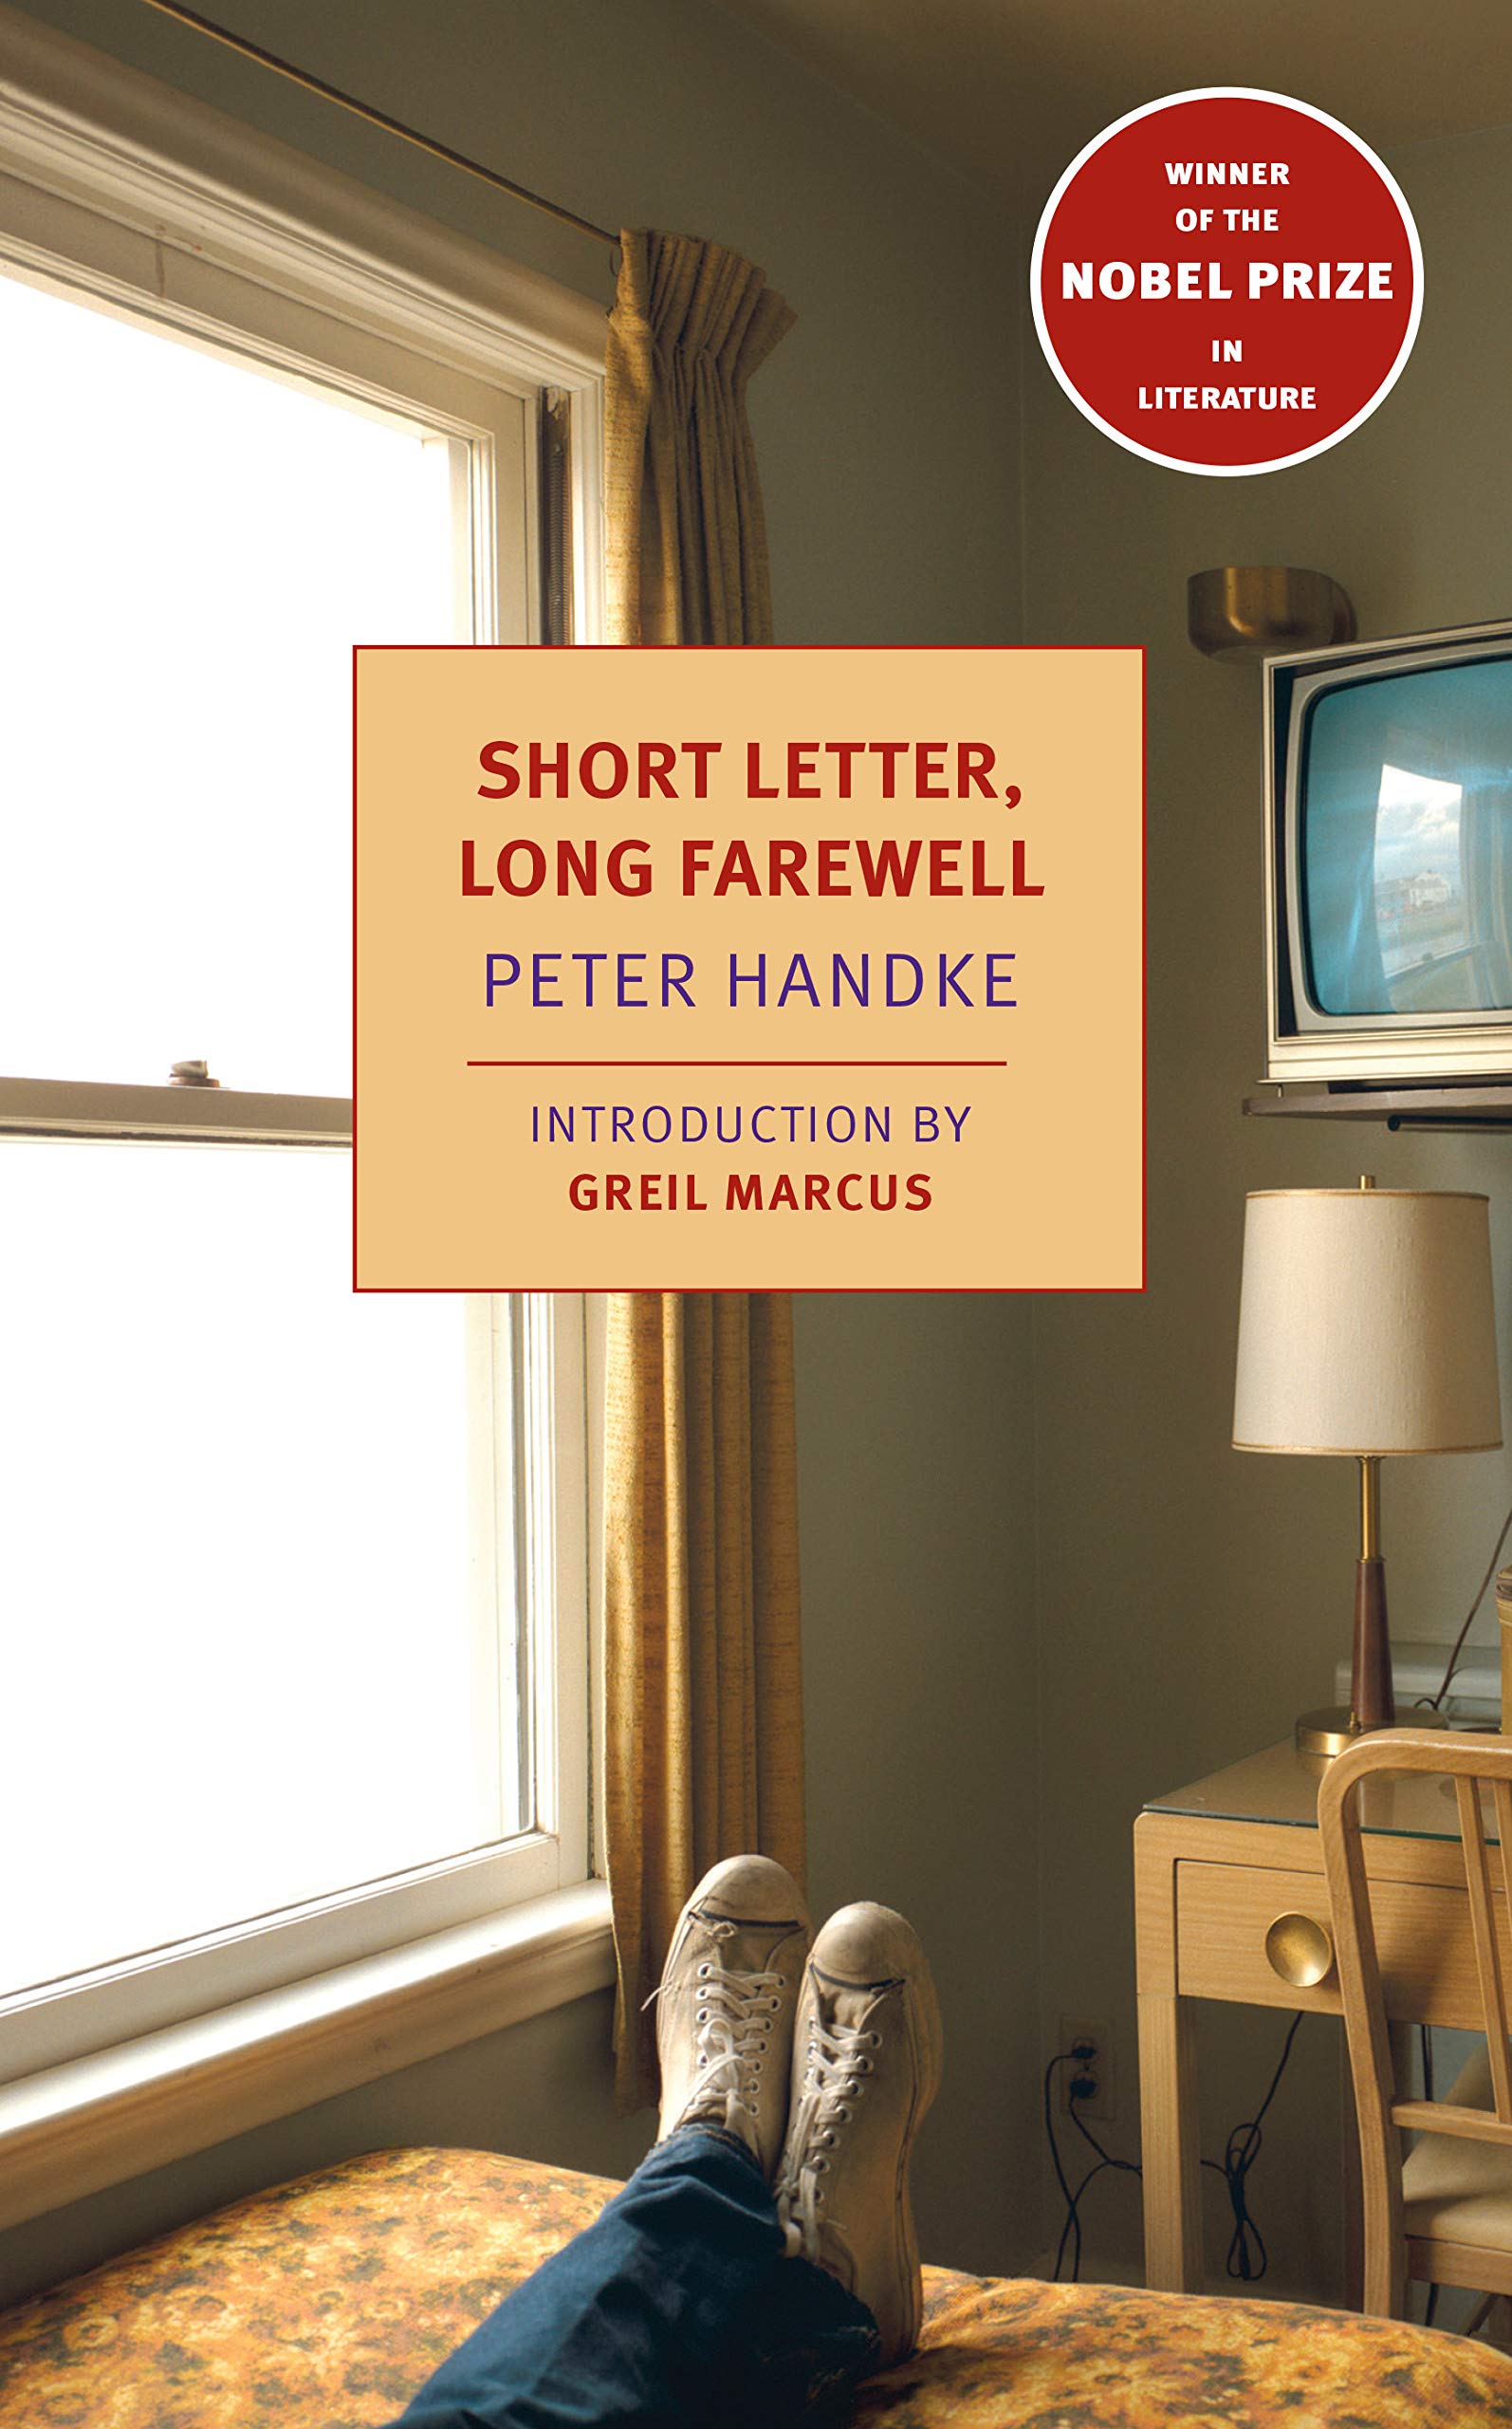 Short Letter, Long Farewell | Peter Handke image1